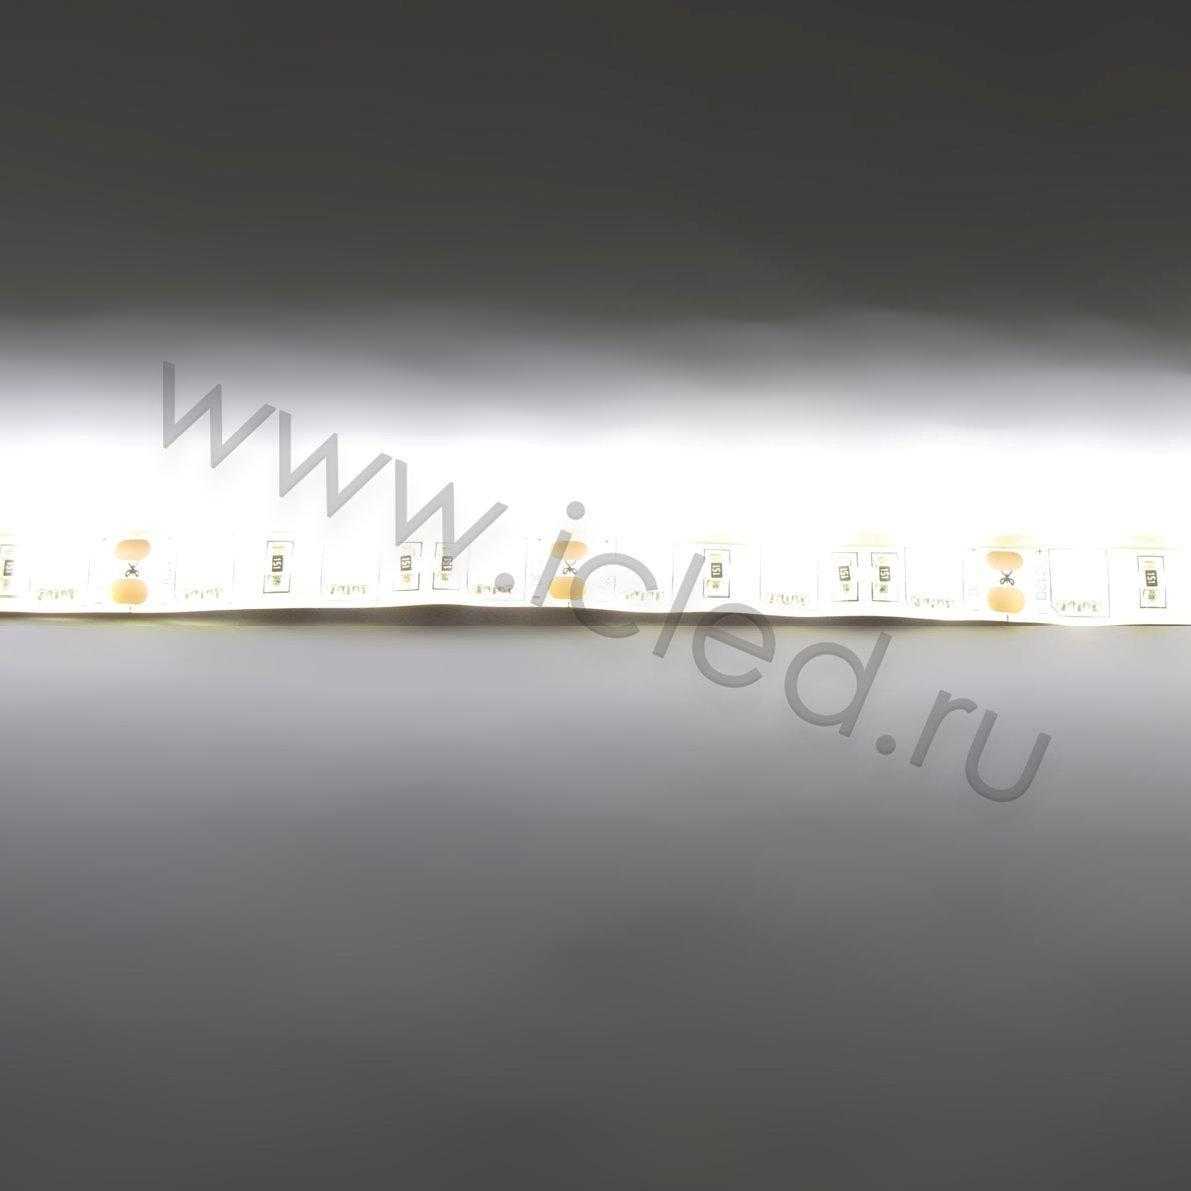 Влагозащищенные светодиодные ленты Светодиодная лента Standart PRO class, 5050, 60led/m, Warm White, 12V, IP65 Icled